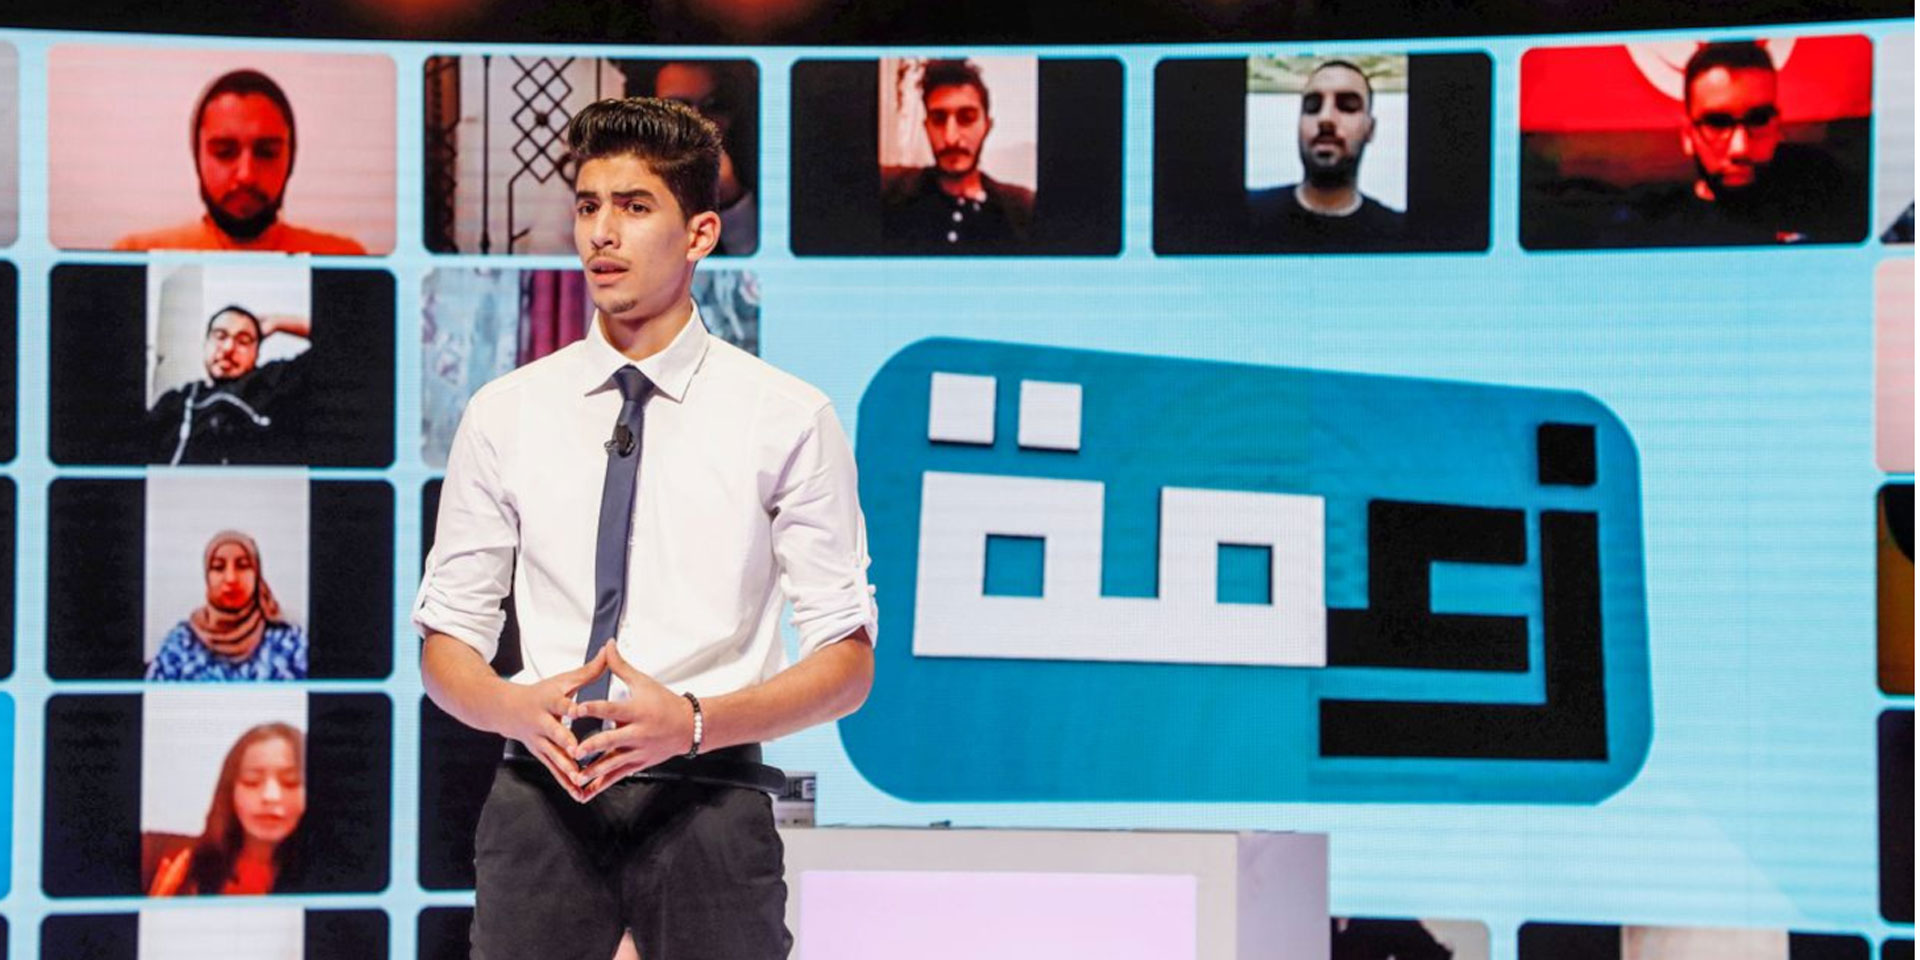 Ein junger Journalist steht vor einem Grossbildschirm und präsentiert Nachrichten